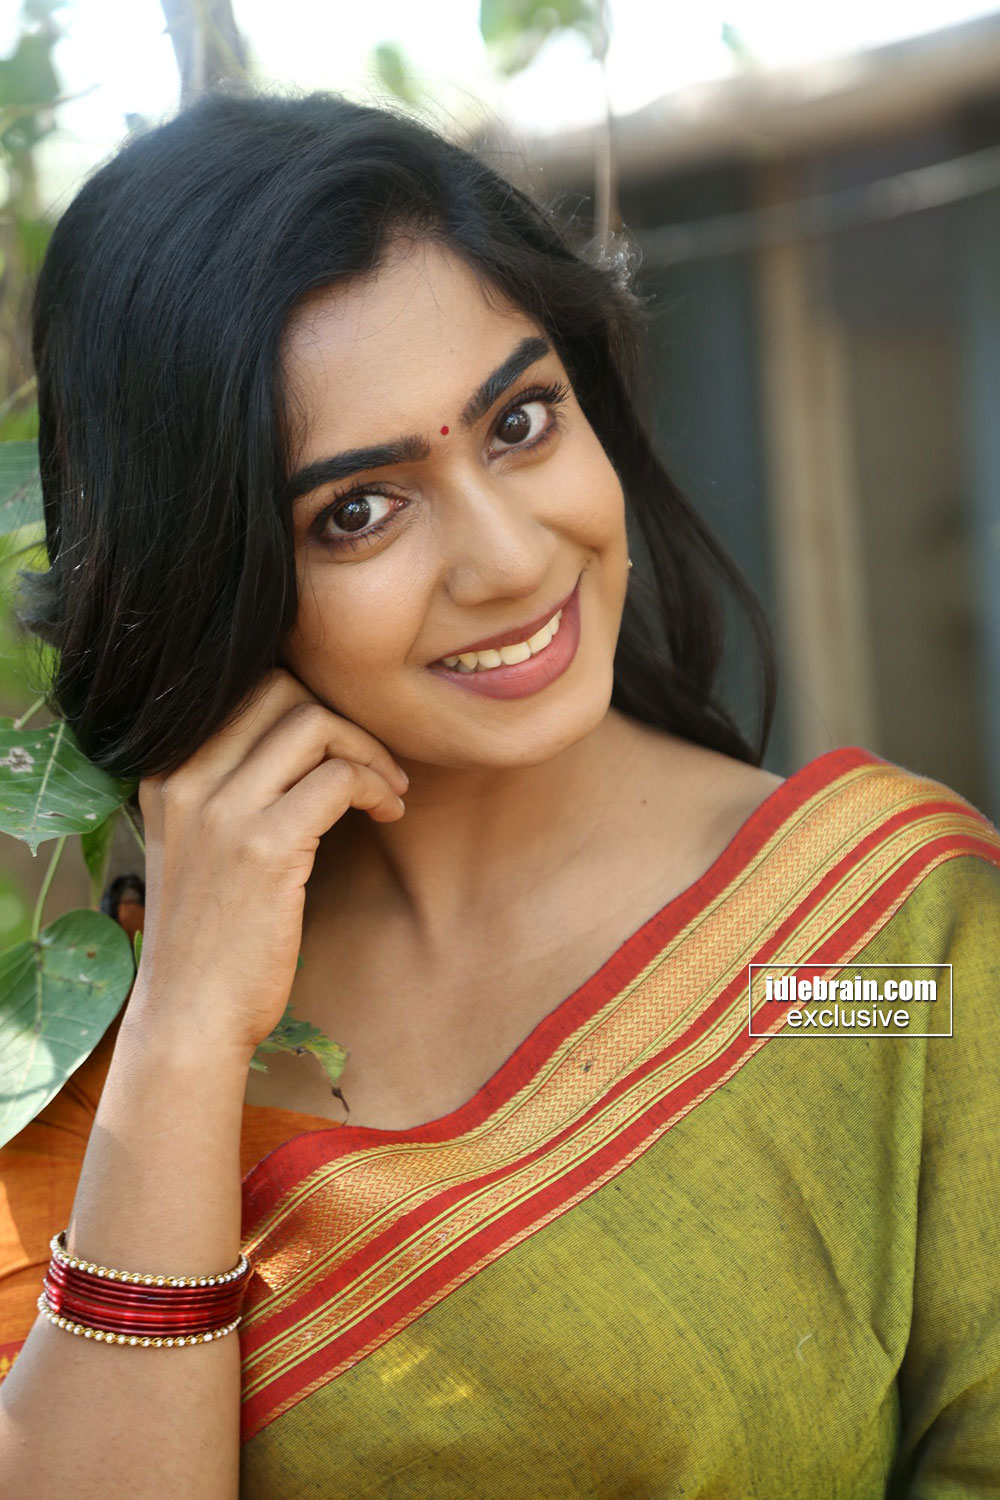 Meghalekha photo gallery - Telugu cinema actress